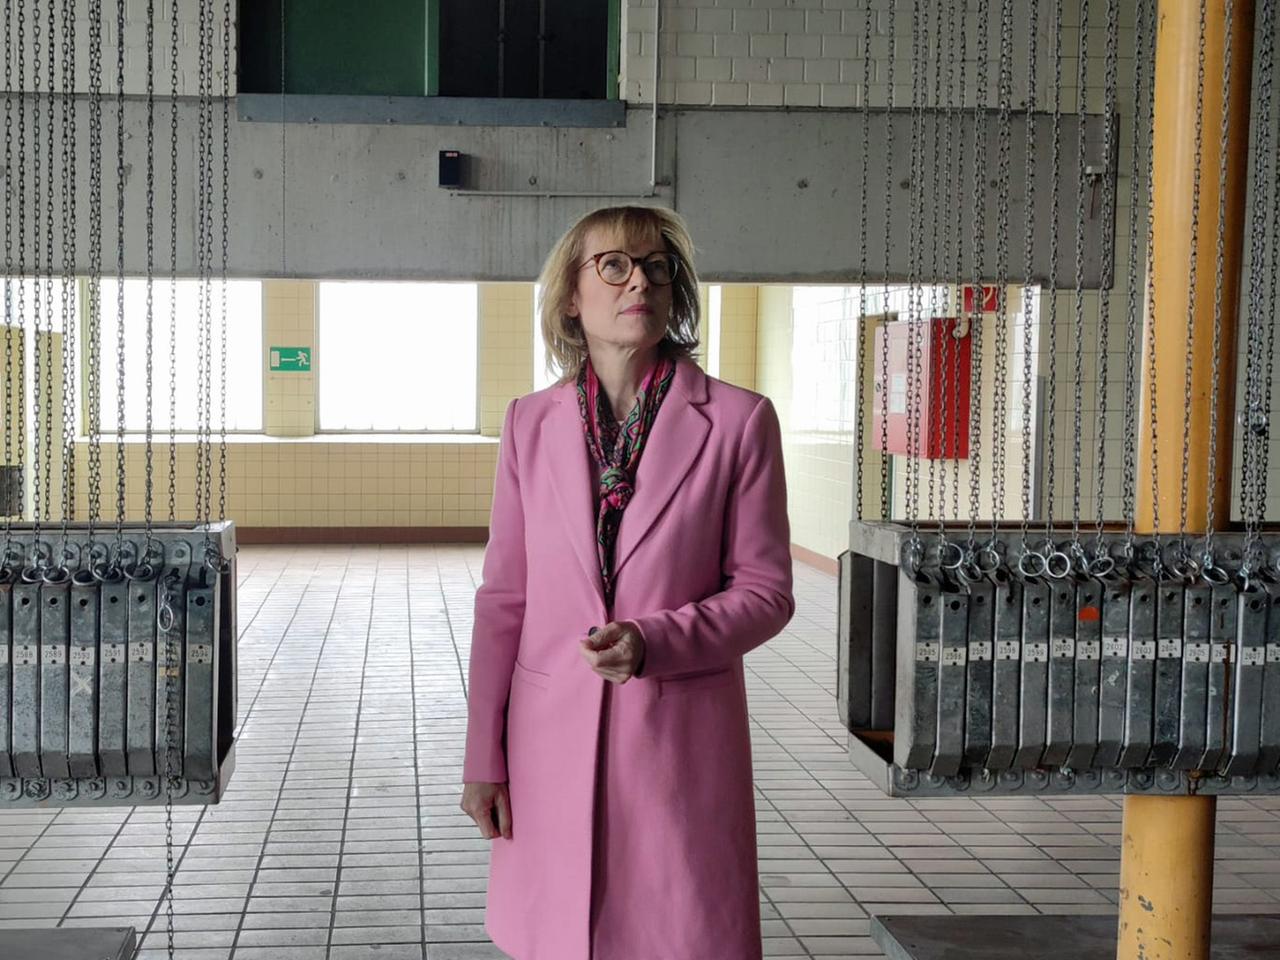 Karin Welge geht mit einem rosafarbenen Mantel durch eine alte Halle